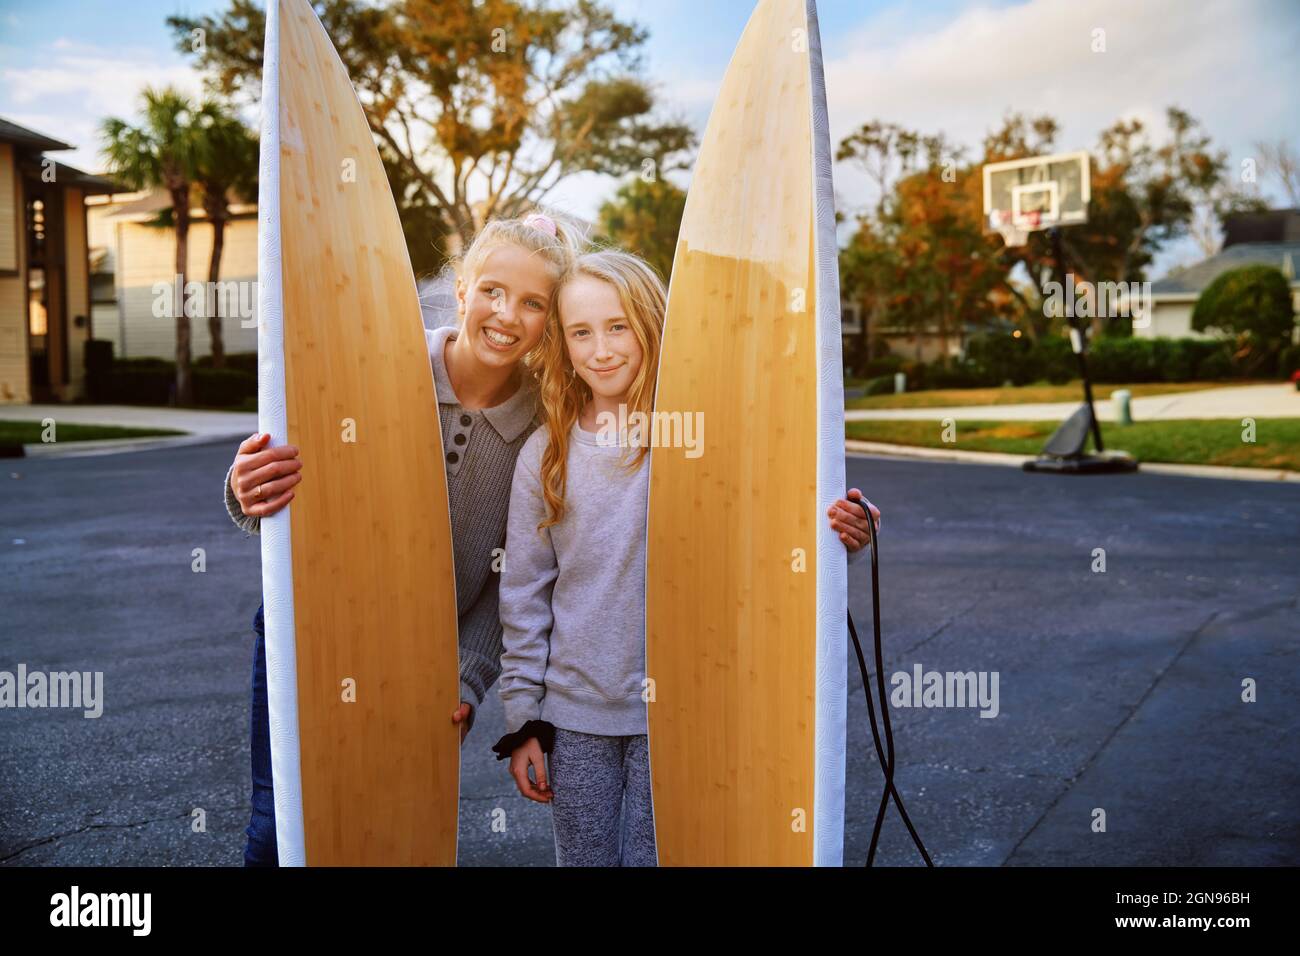 Lächelnde Mädchen halten Surfbretter im öffentlichen Park Stockfoto